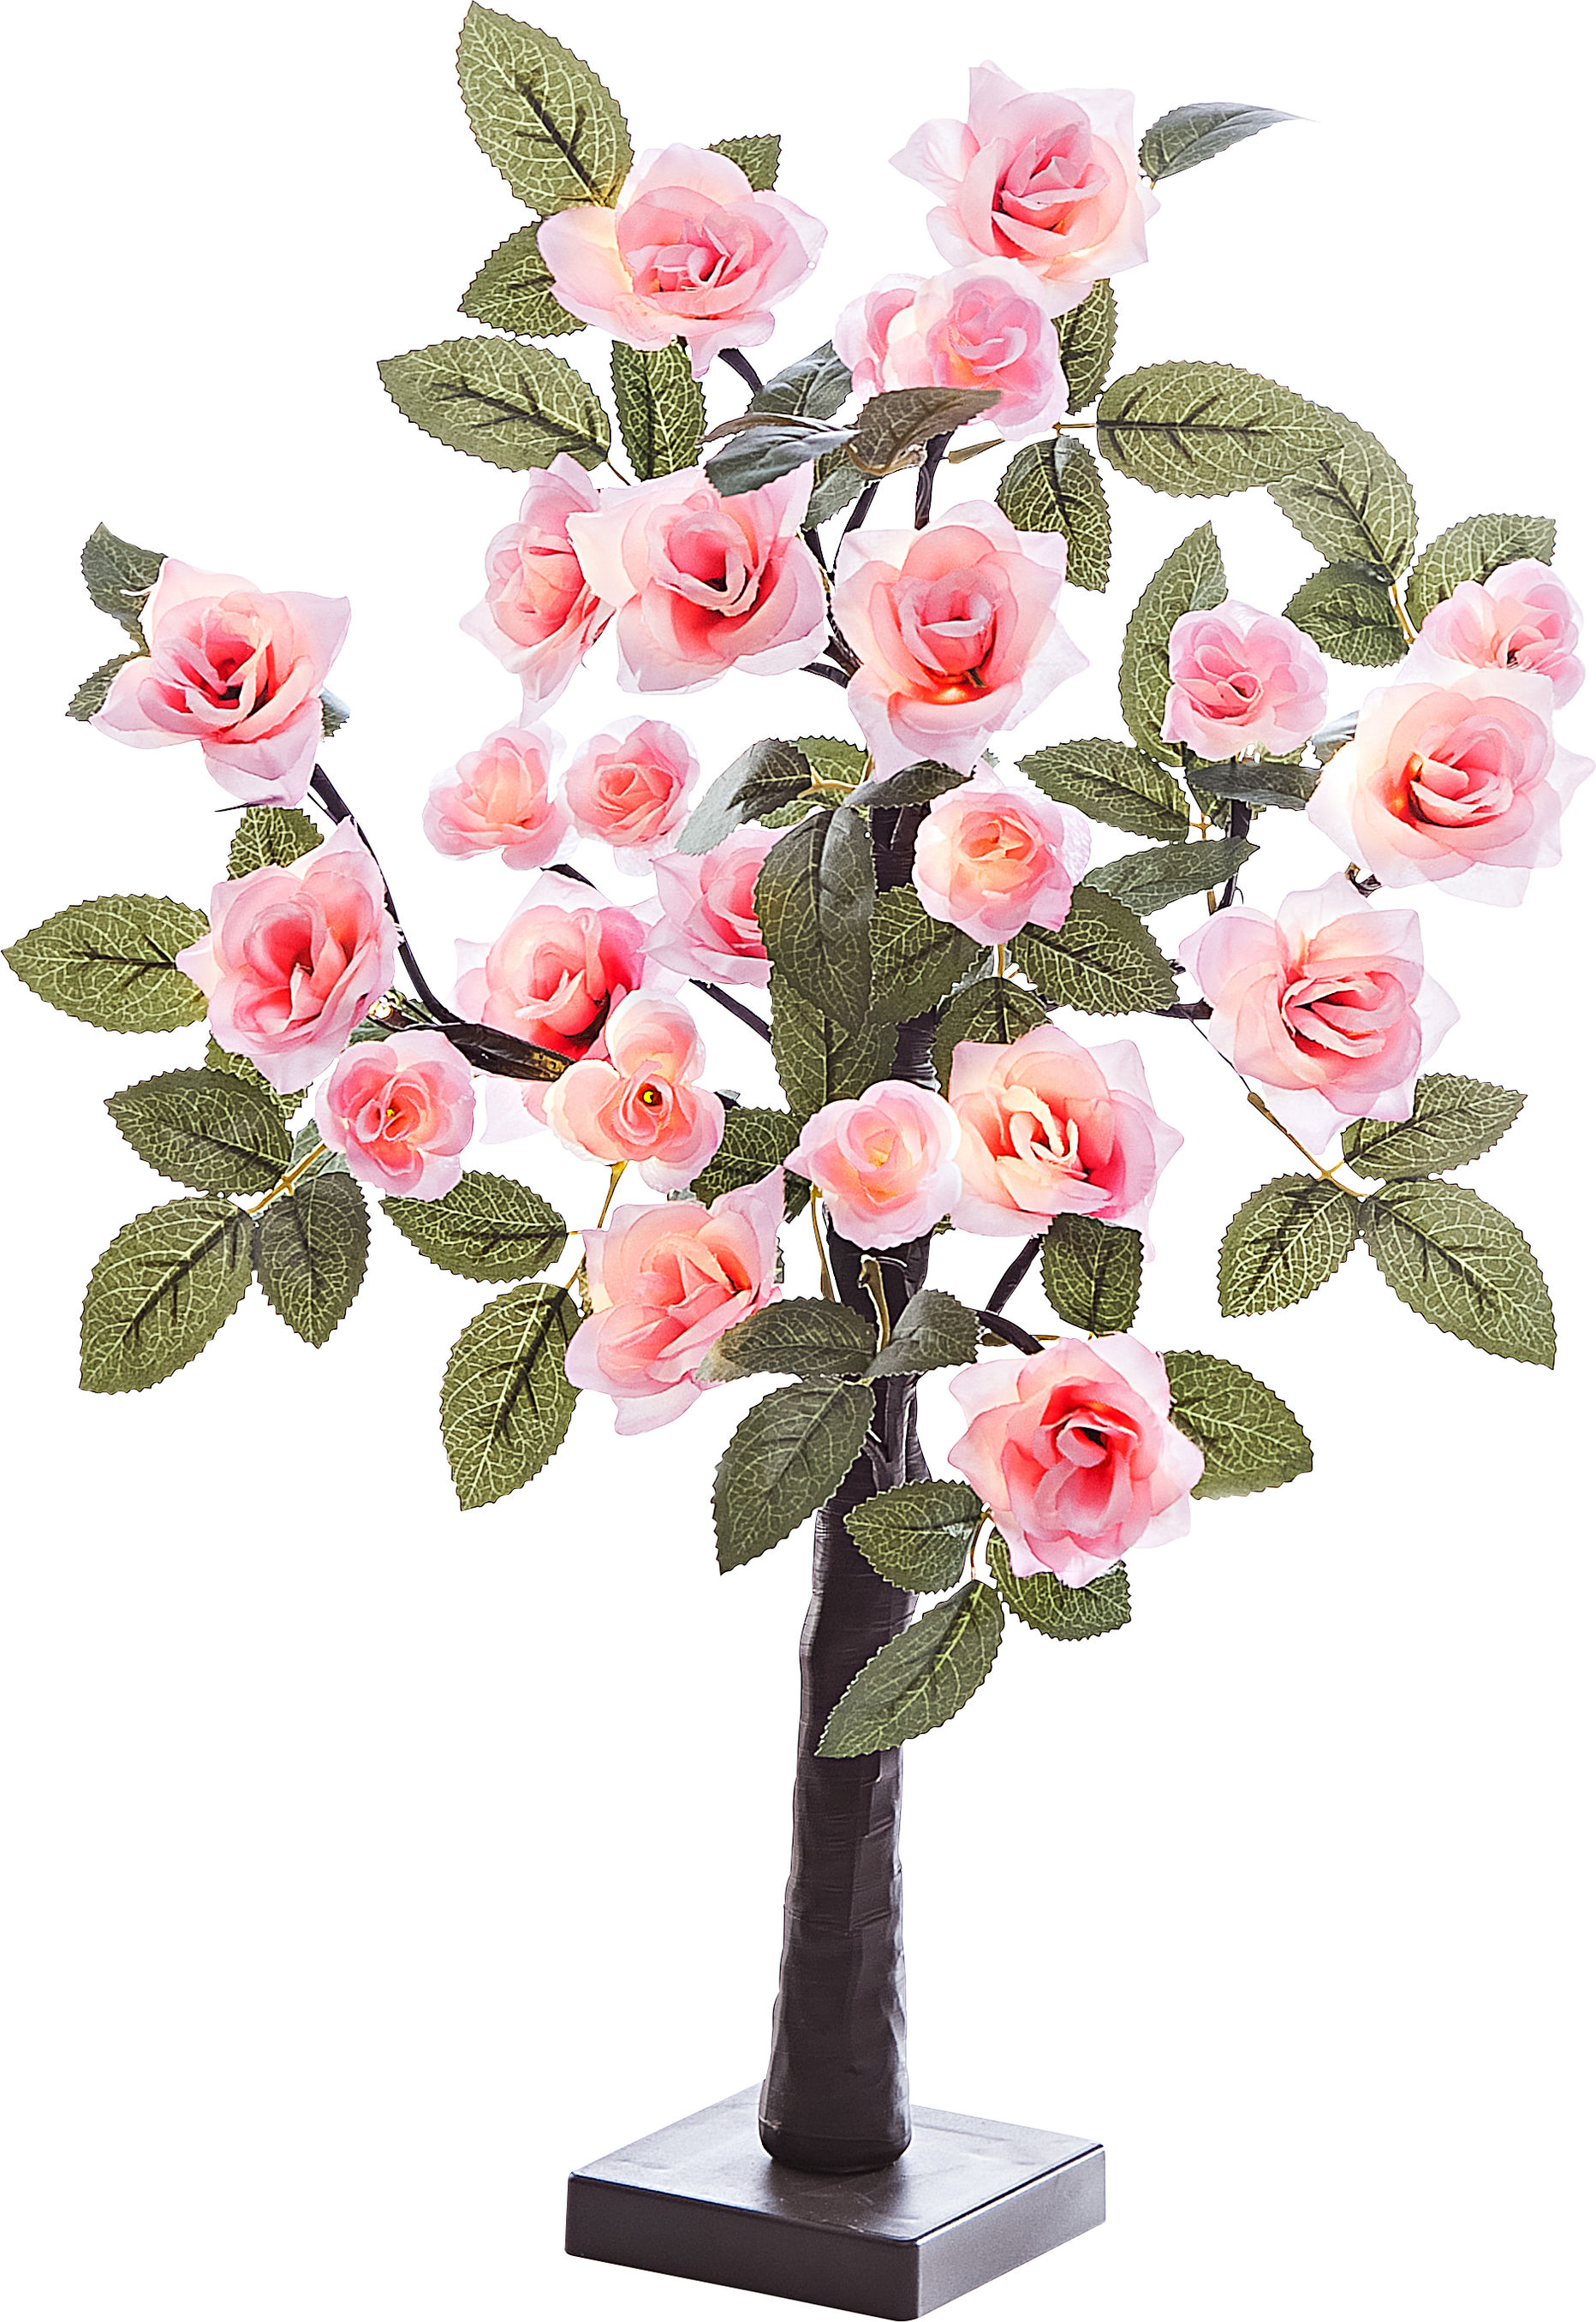 Rosenlampenbaum, leuchten Rosenblütenbaum 24 LED-Lampe, perfekt